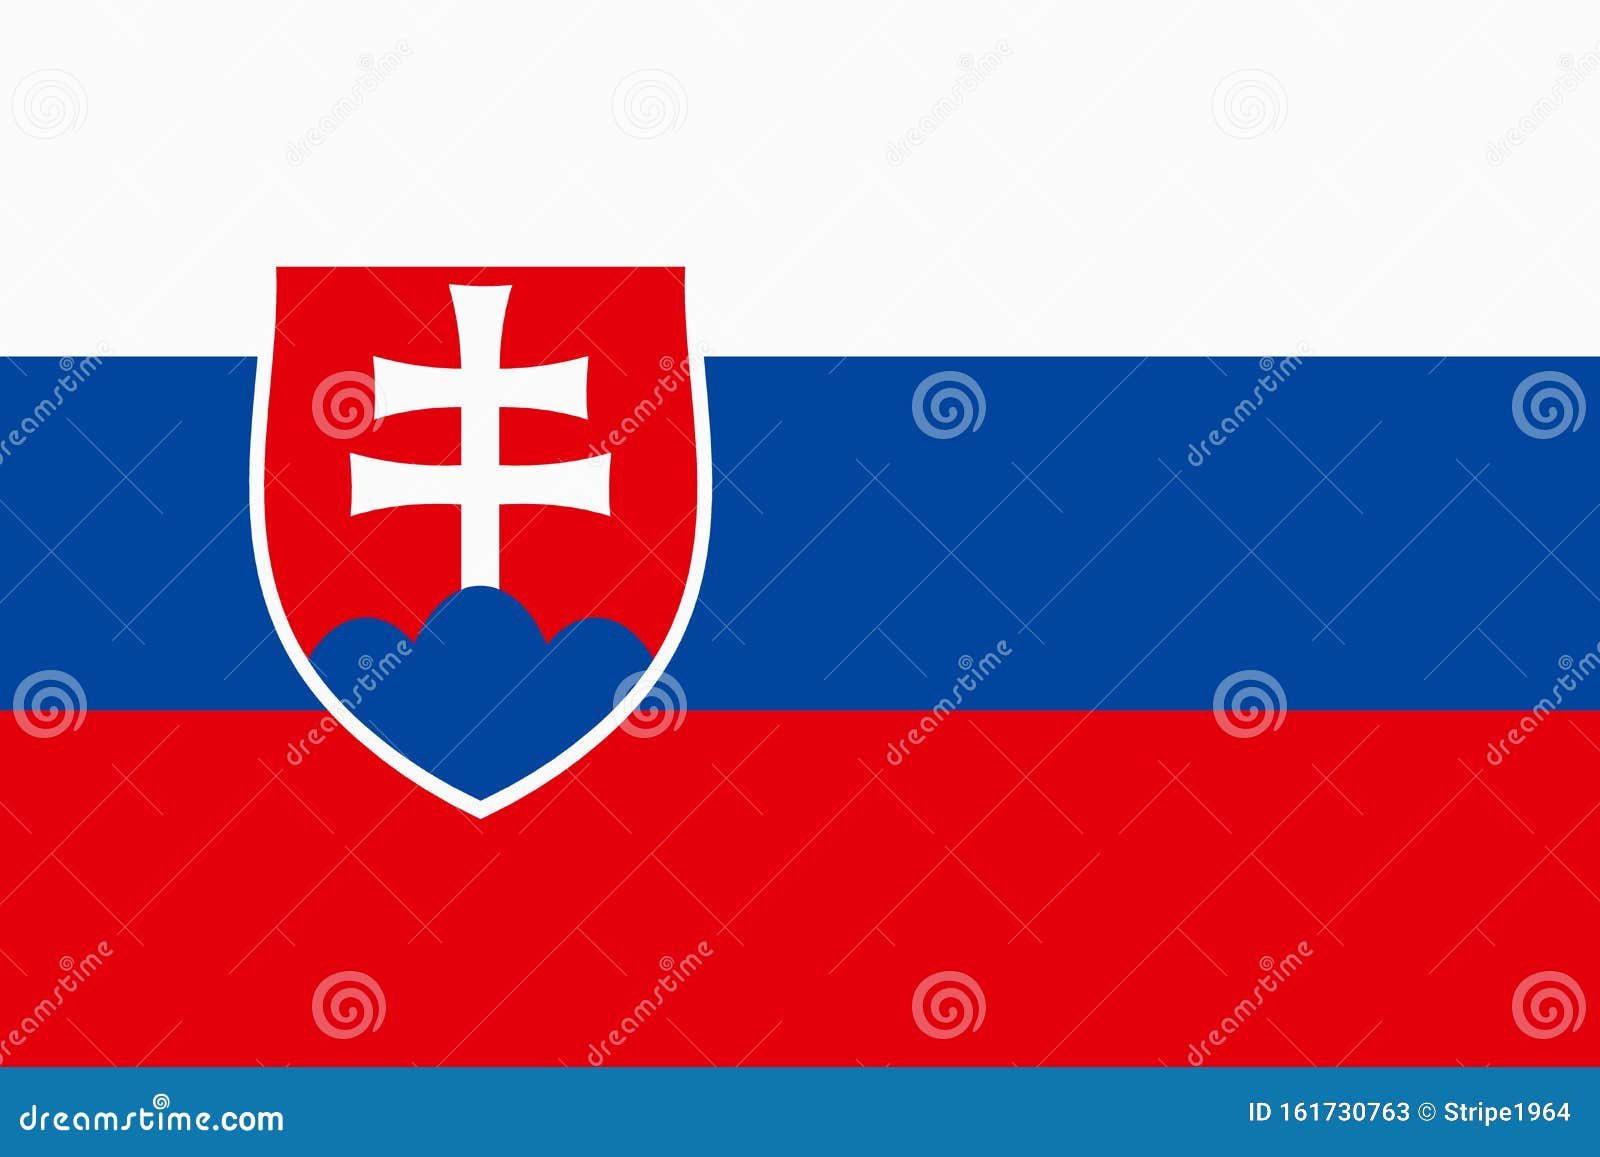 Cờ Slovakia với những màu đỏ trắng xanh tượng trưng cho nguồn gốc lịch sử, văn hóa và quê hương, hình ảnh này sẽ khiến bạn thích thú và cảm nhận sự đa dạng văn hóa của các dân tộc tại Slovakia. Hãy cùng xem hình ảnh để tìm hiểu thêm về quốc gia này và vẻ đẹp của cờ Slovakia.